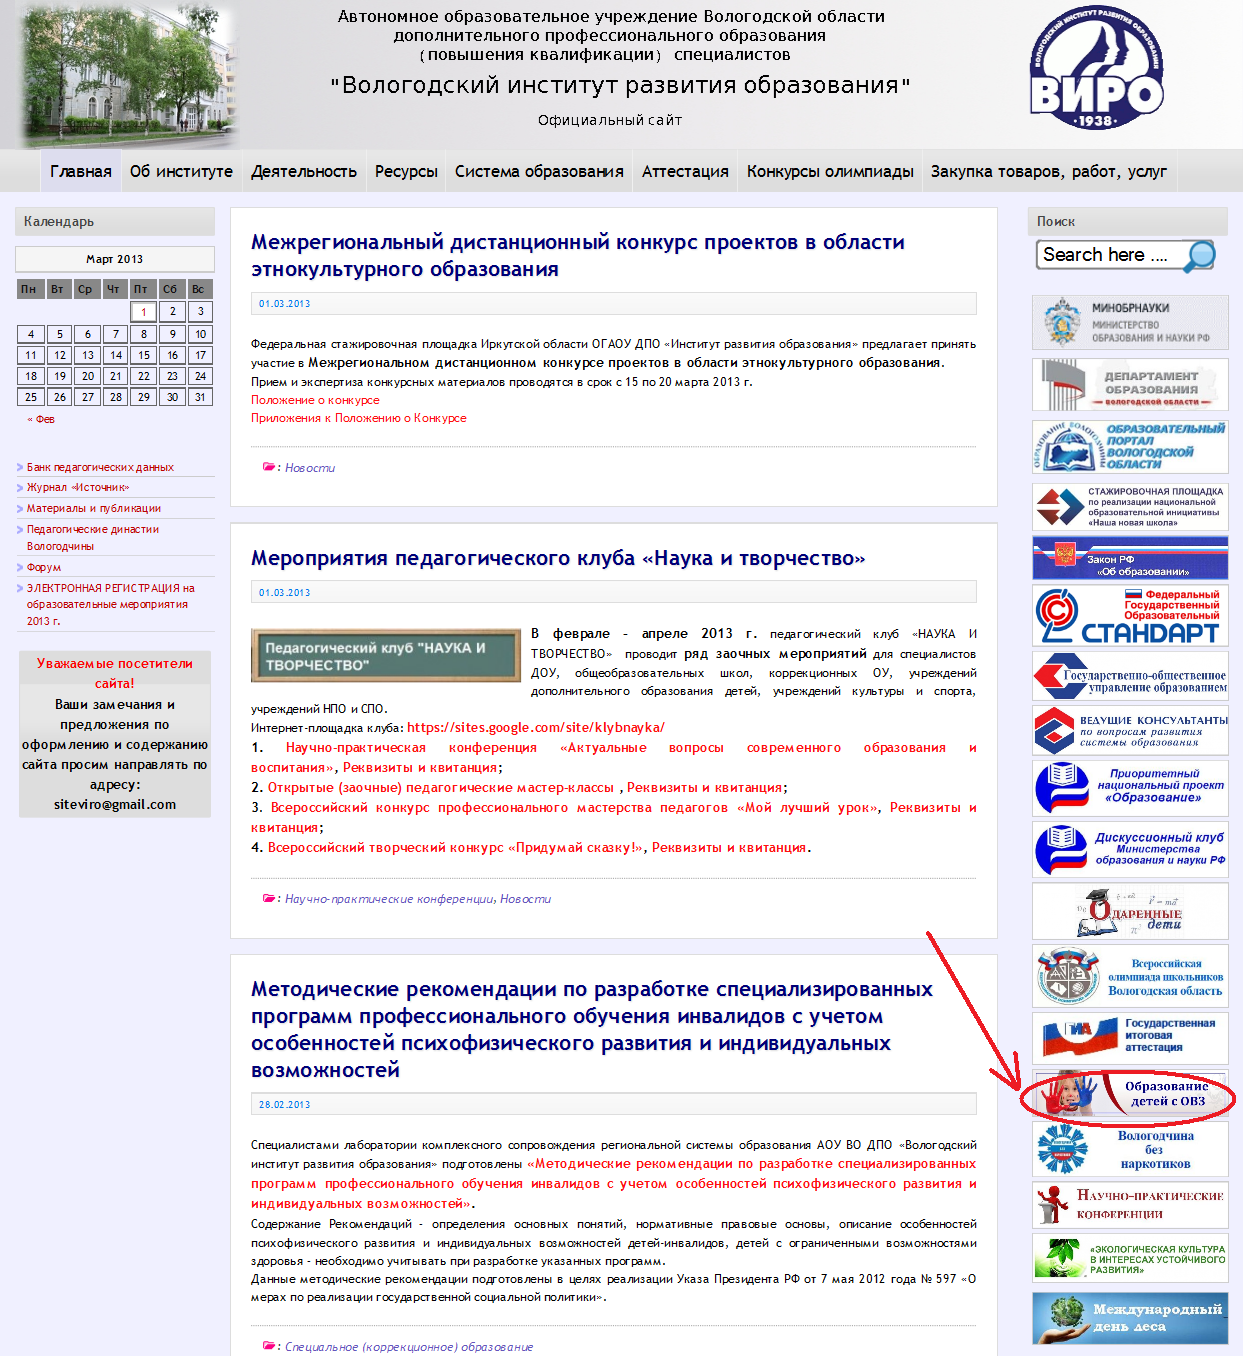 Департамент образования Вологодской области.